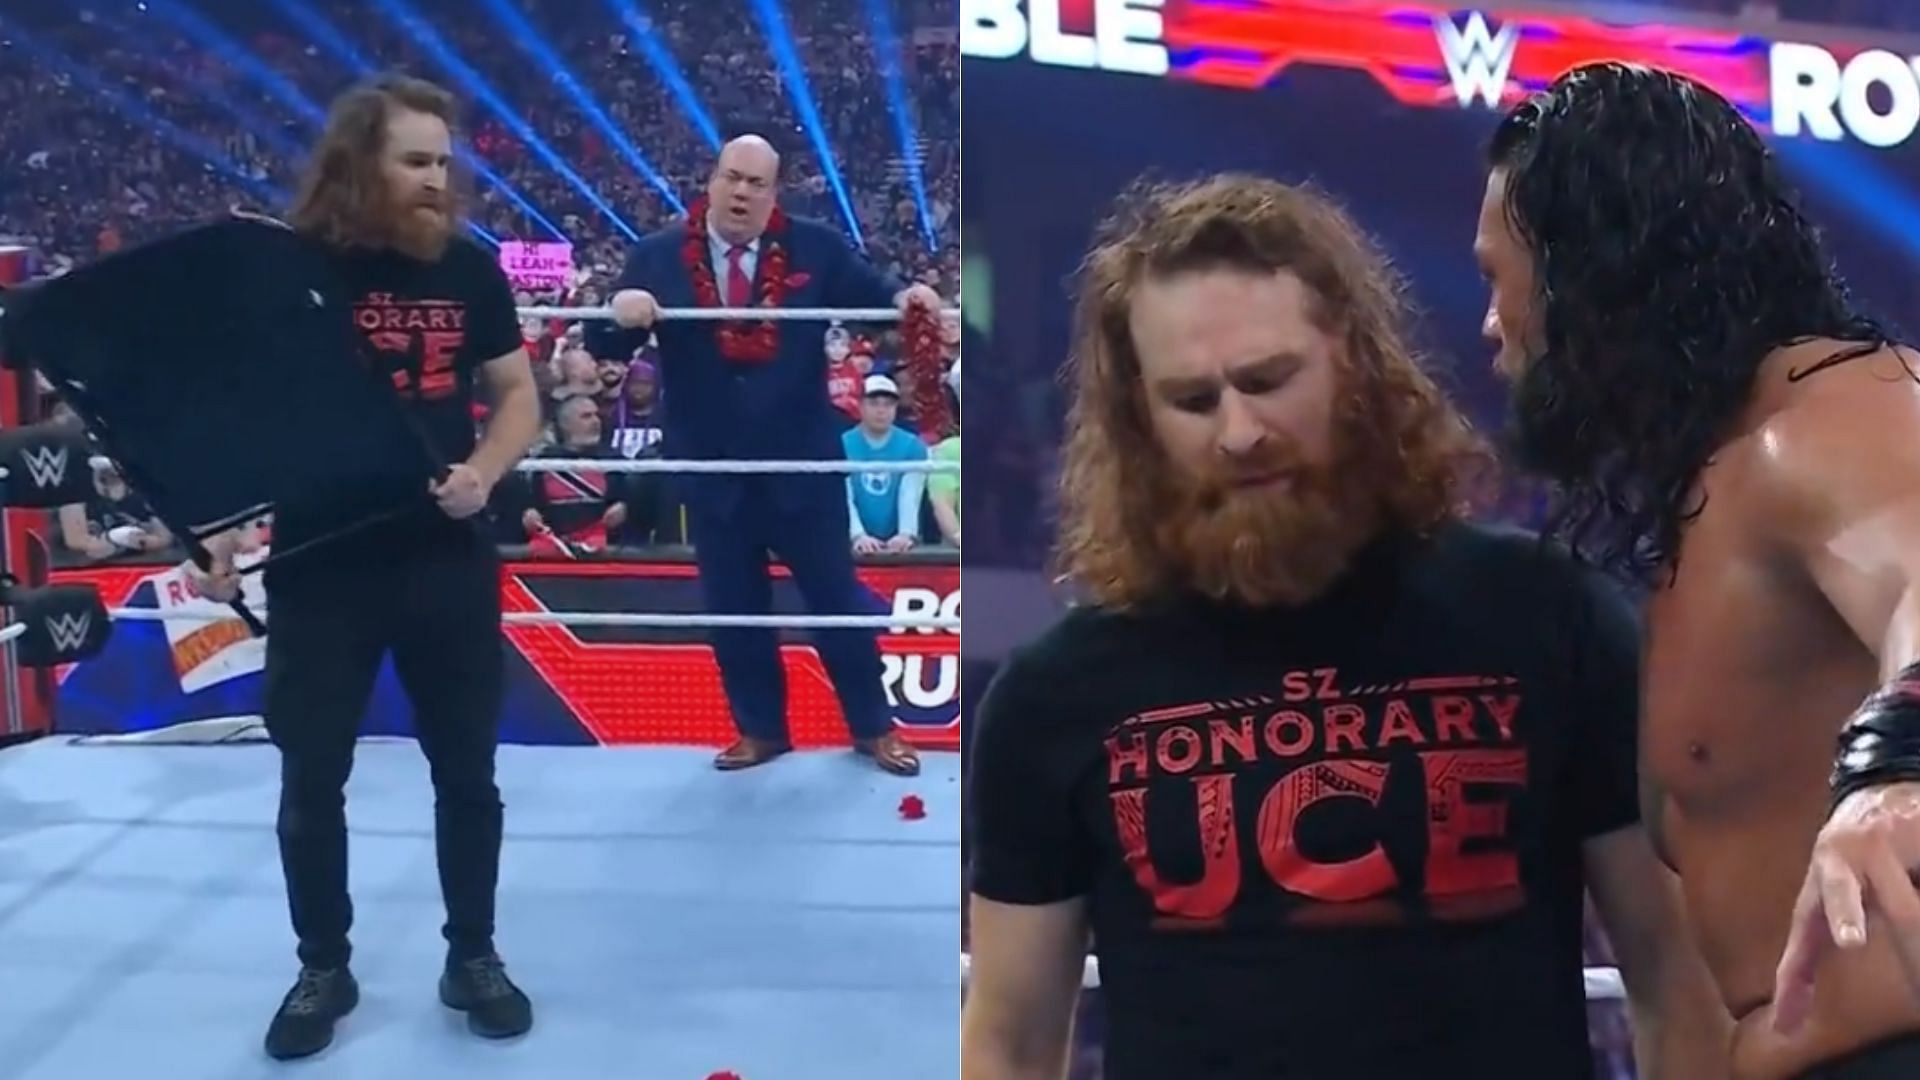 Sami Zayn betrayed Roman Reigns at the Royal Rumble.